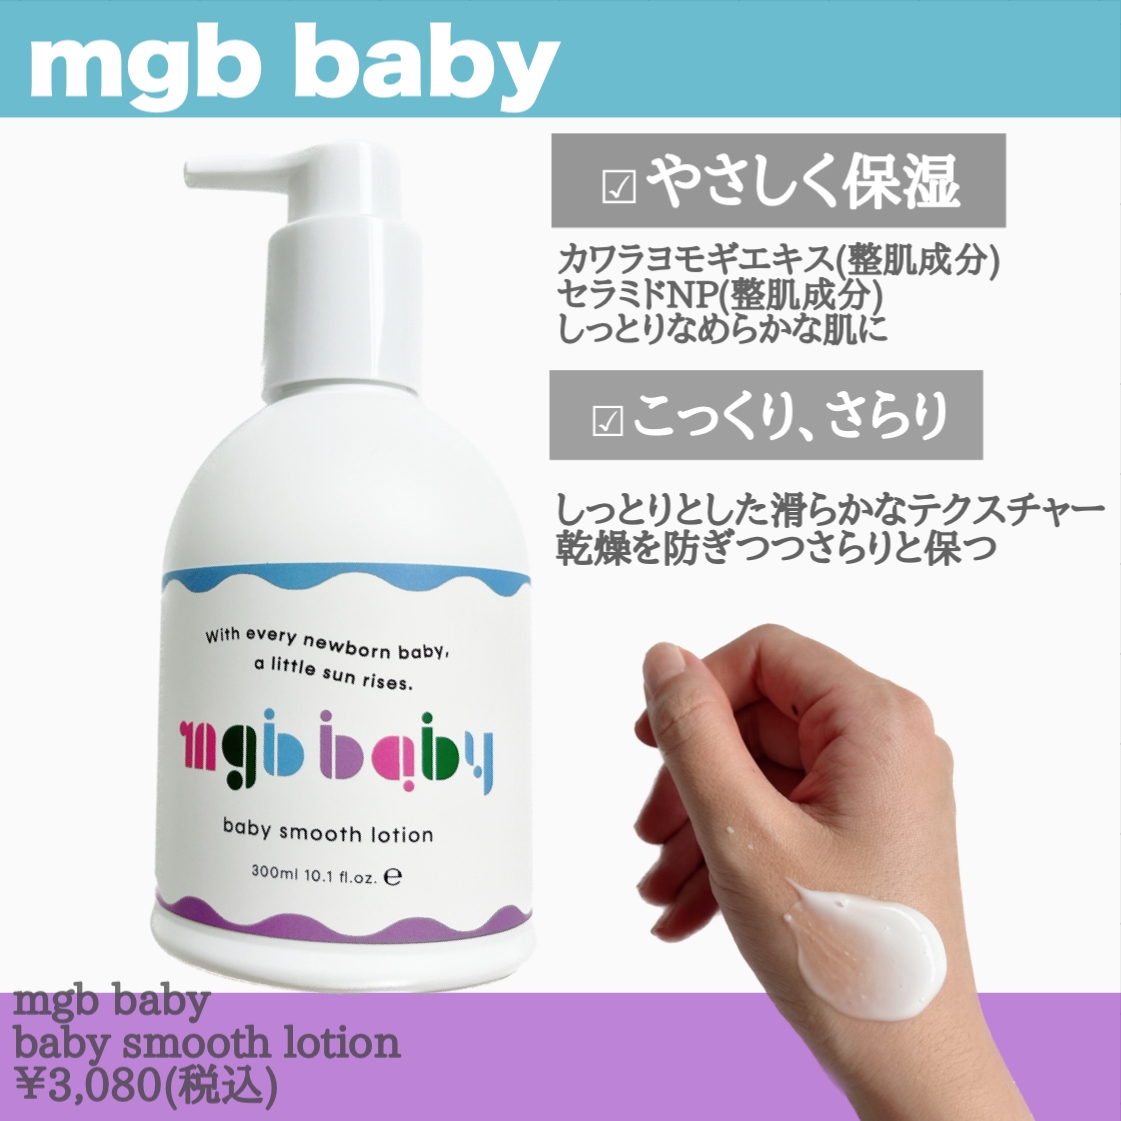 mgb baby(エムジービー ベビー) ベビースムースローションの良い点・メリットに関するまみやこさんの口コミ画像2